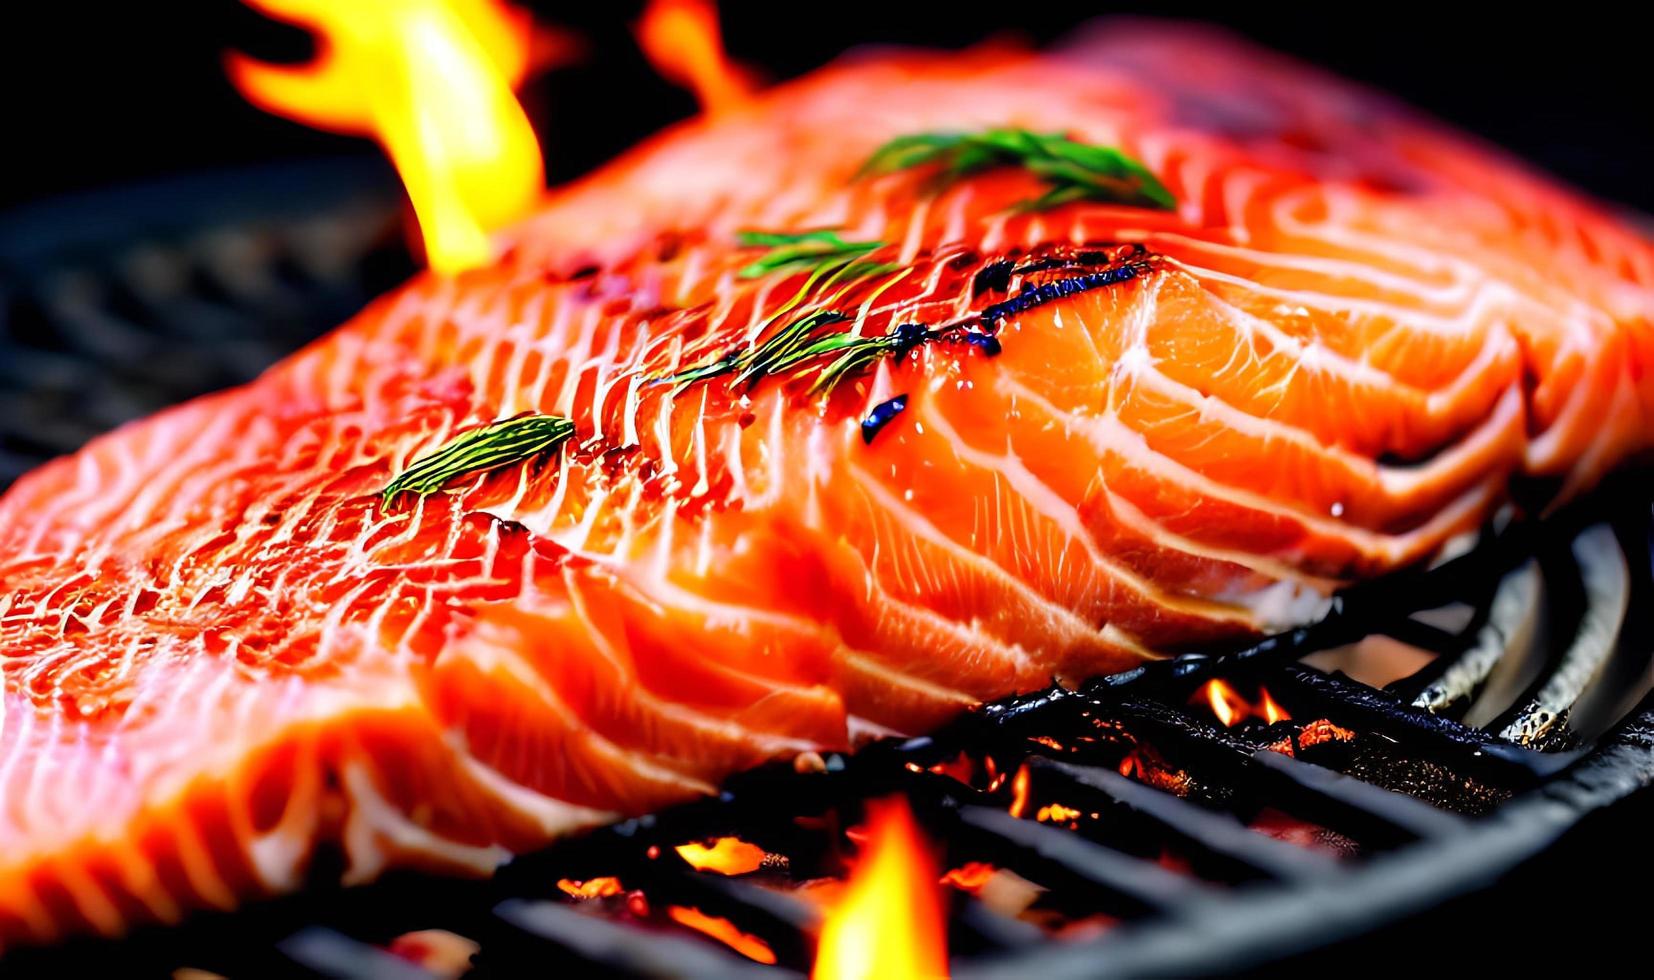 salmão grelhado. salmão assado de comida saudável. prato de peixe quente. foto